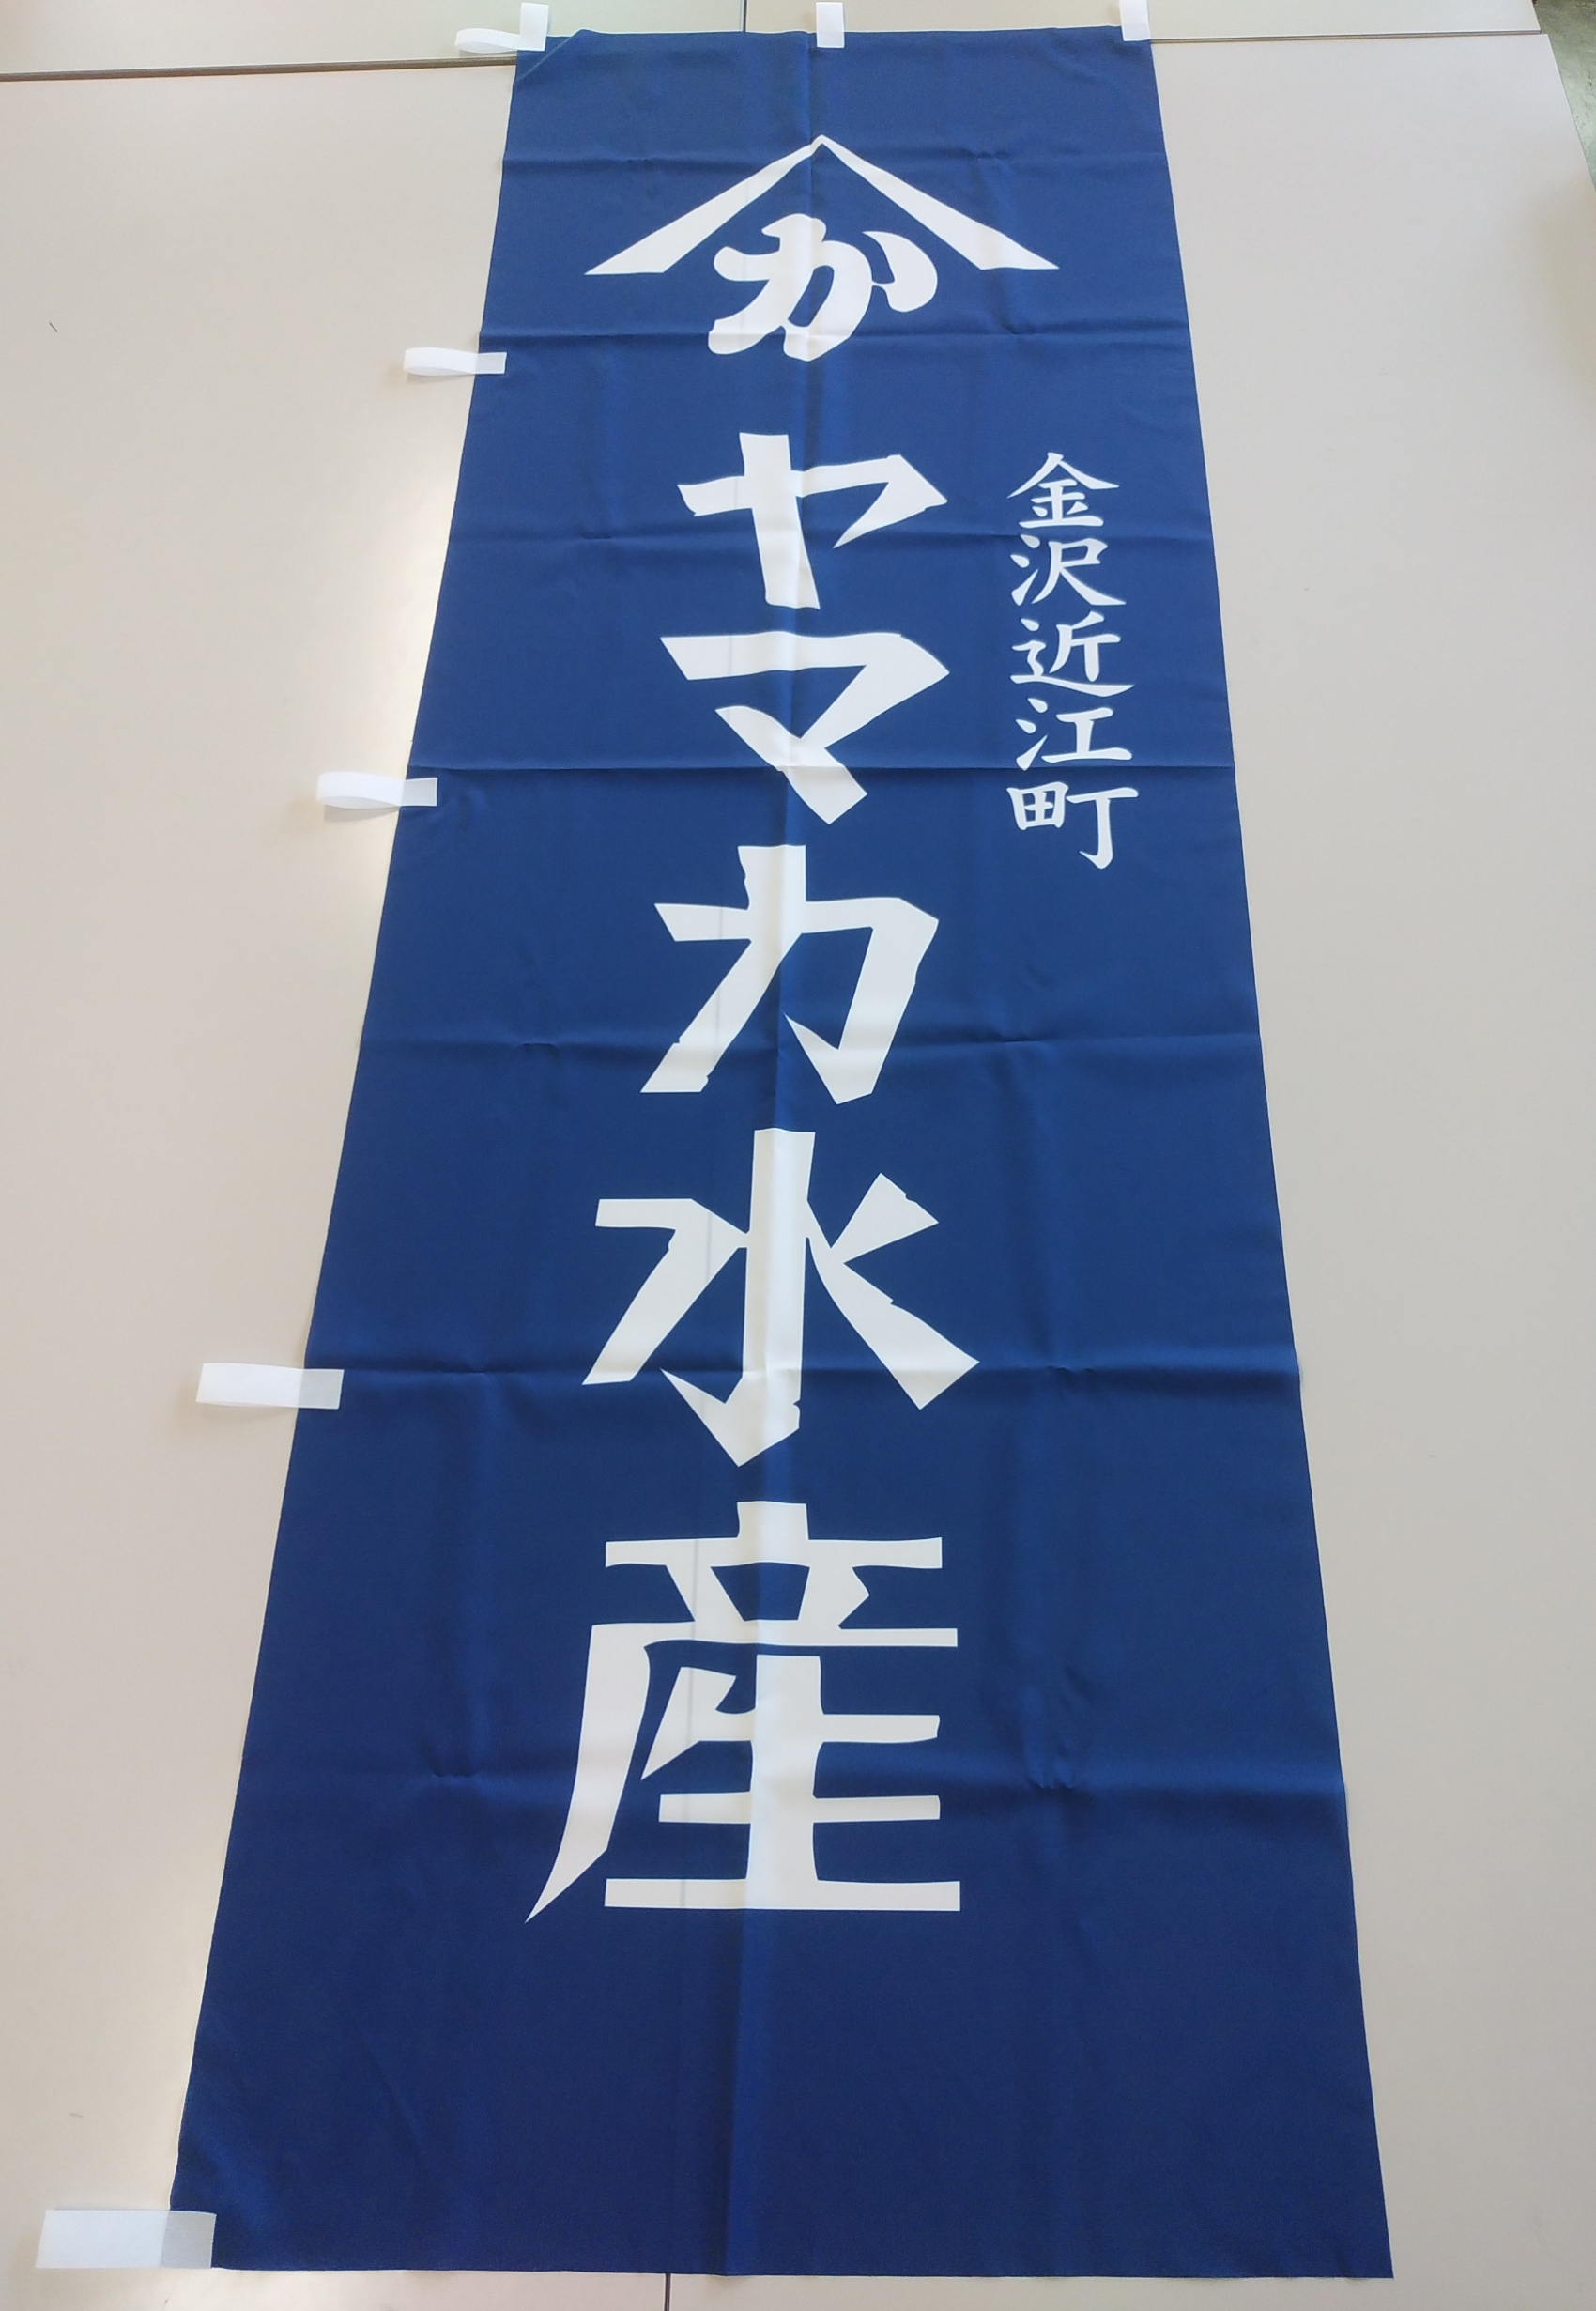 ジャンル のぼり旗 石川県金沢市でオリジナルキャップやマフラー ソックスを制作 通信販売するflap フラップ